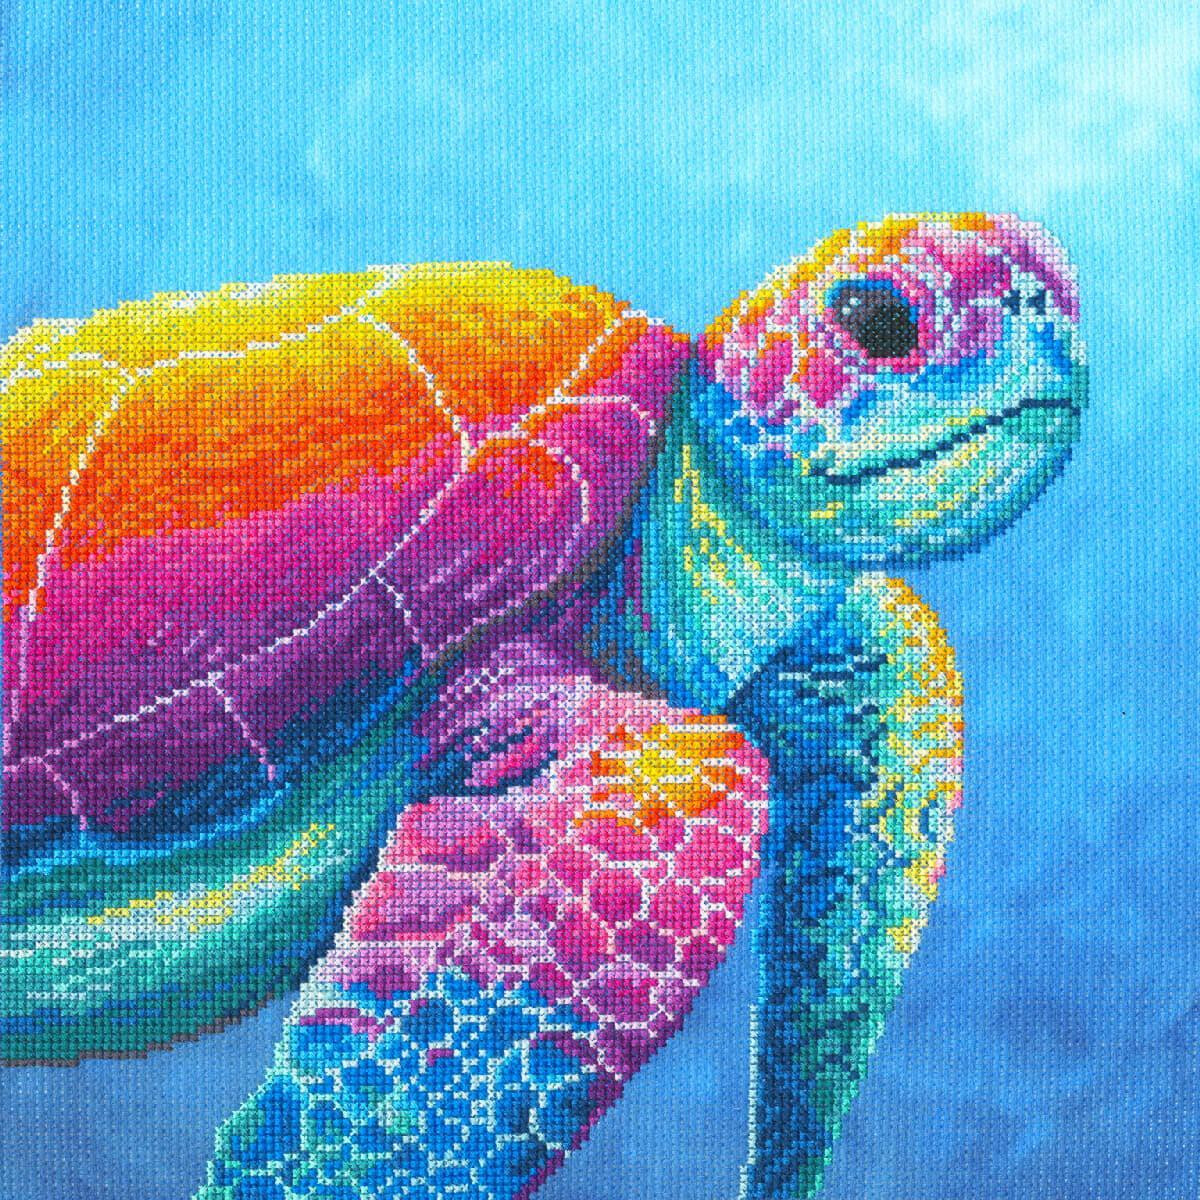 Una vibrante ilustración de una tortuga marina...